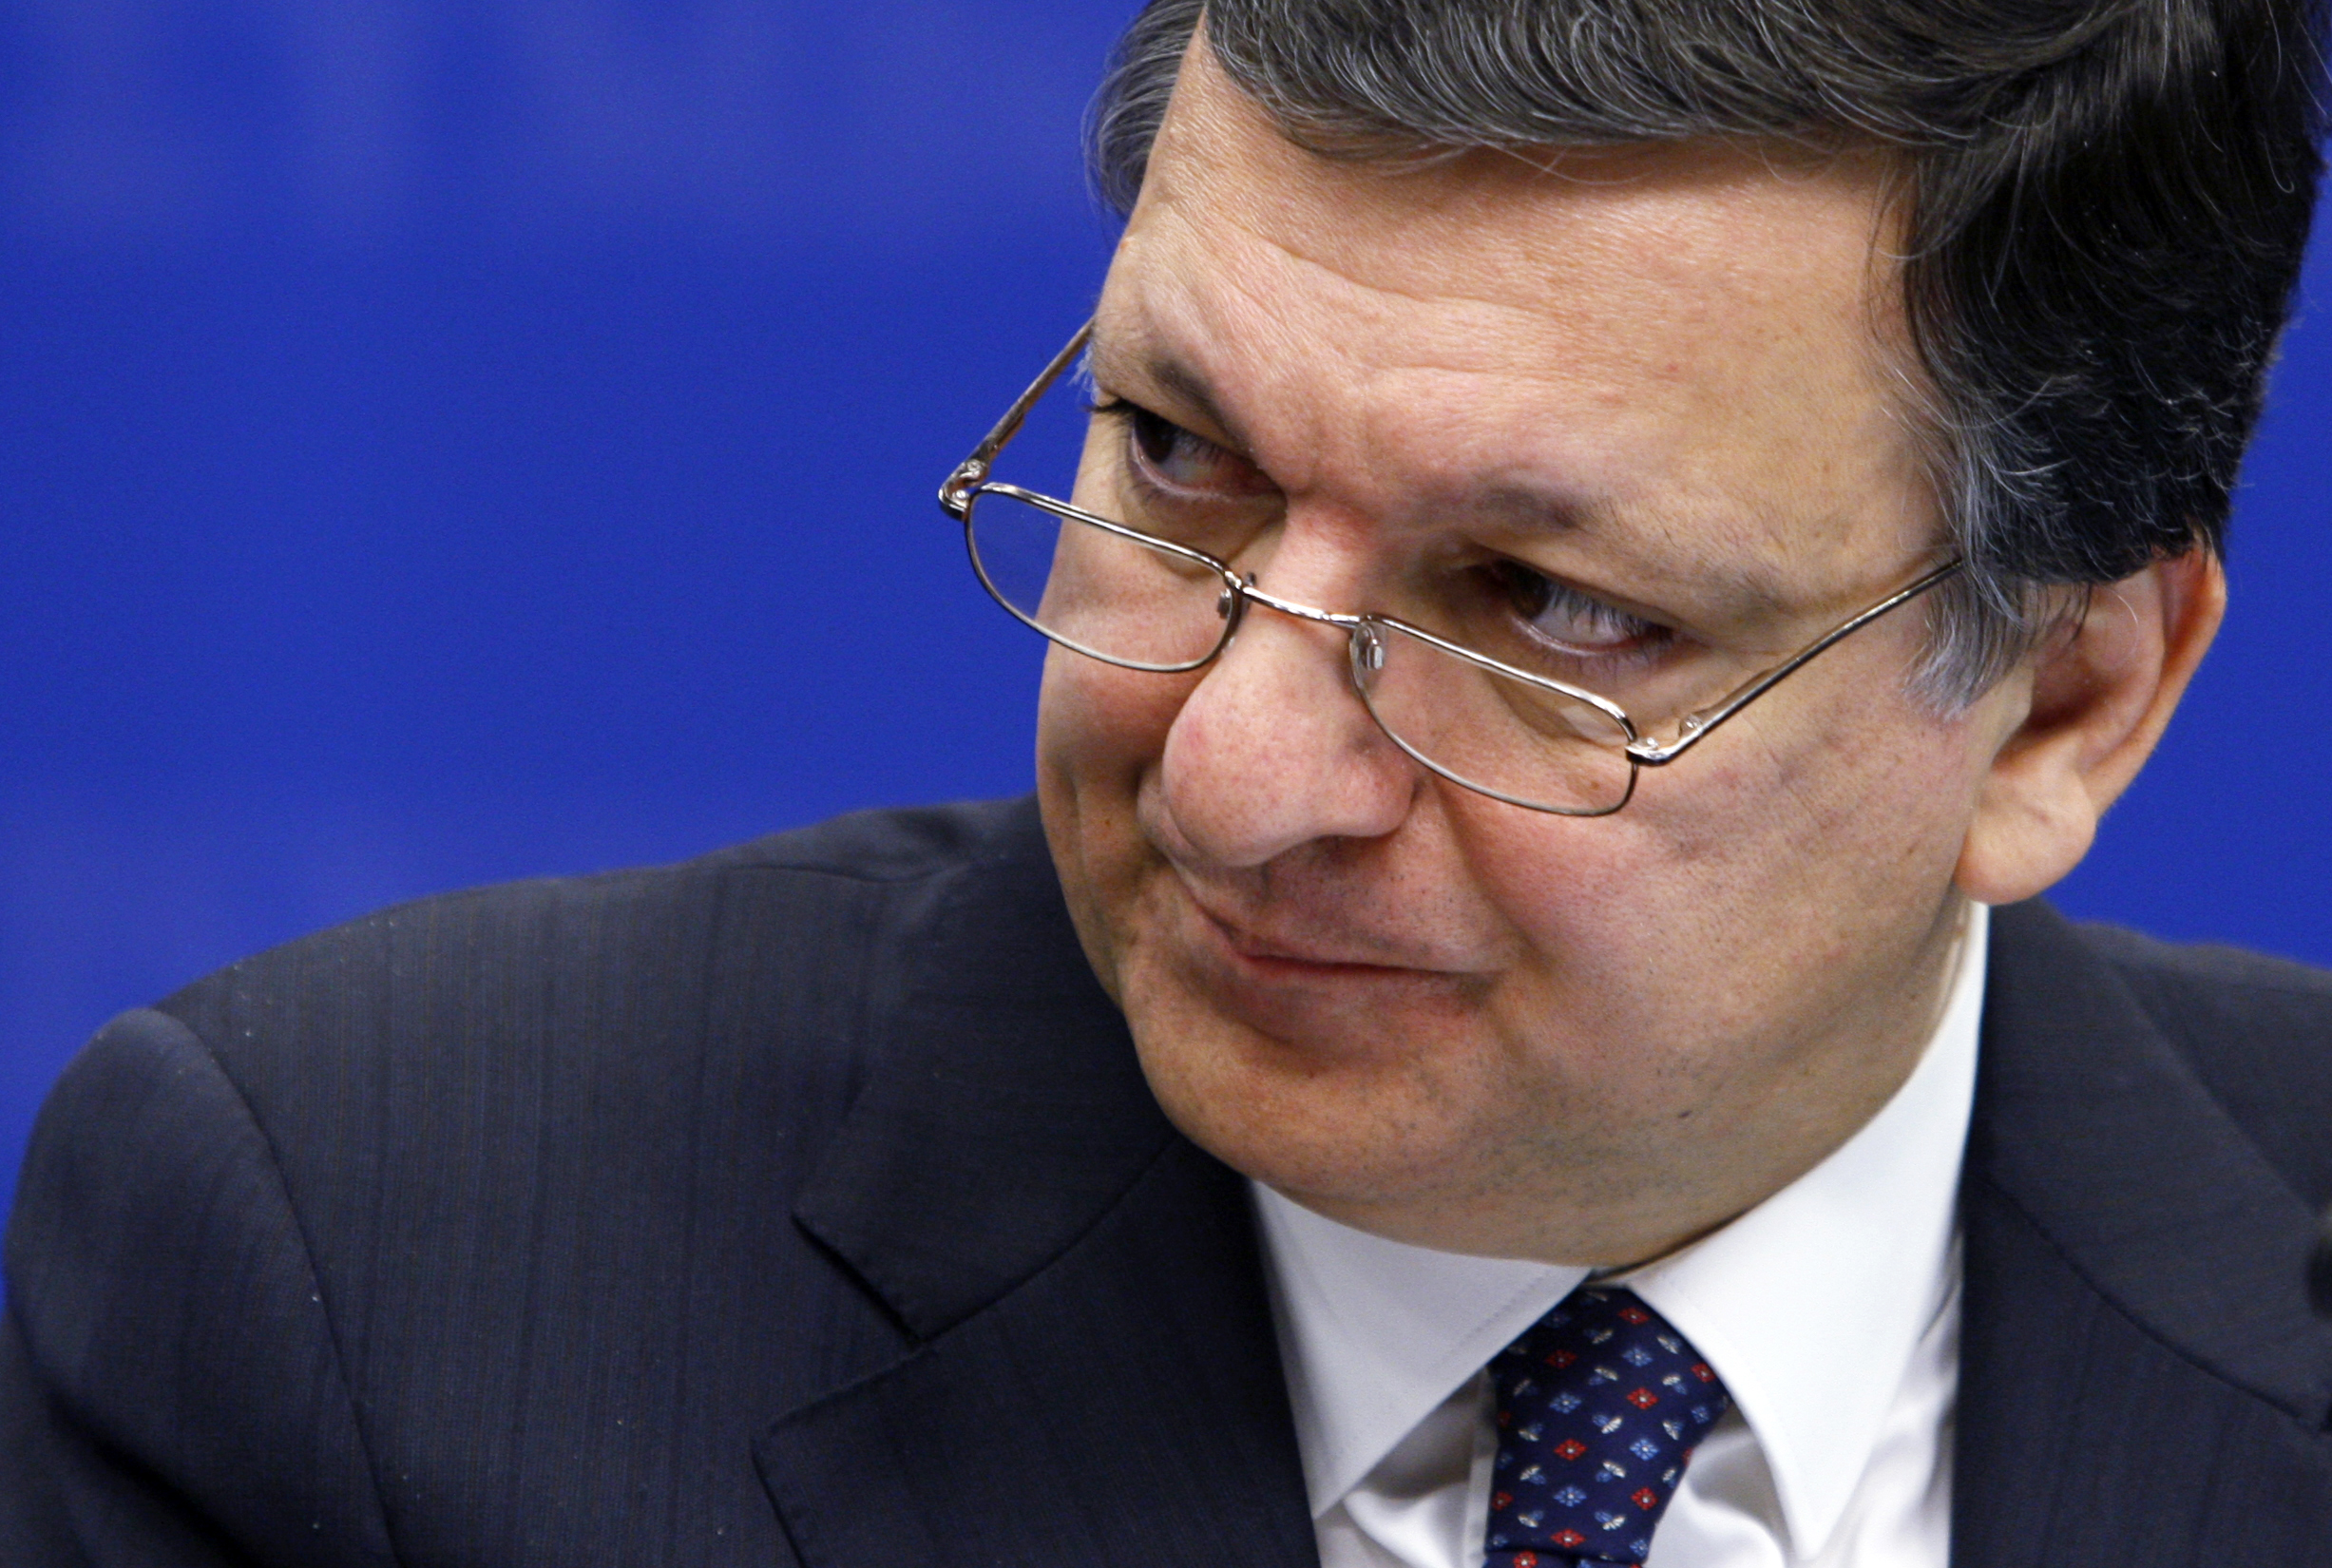 London kvótát állapítana meg az EU-bevándorlásra, Barroso szerint ez törvénysértő lenne (2. rész)